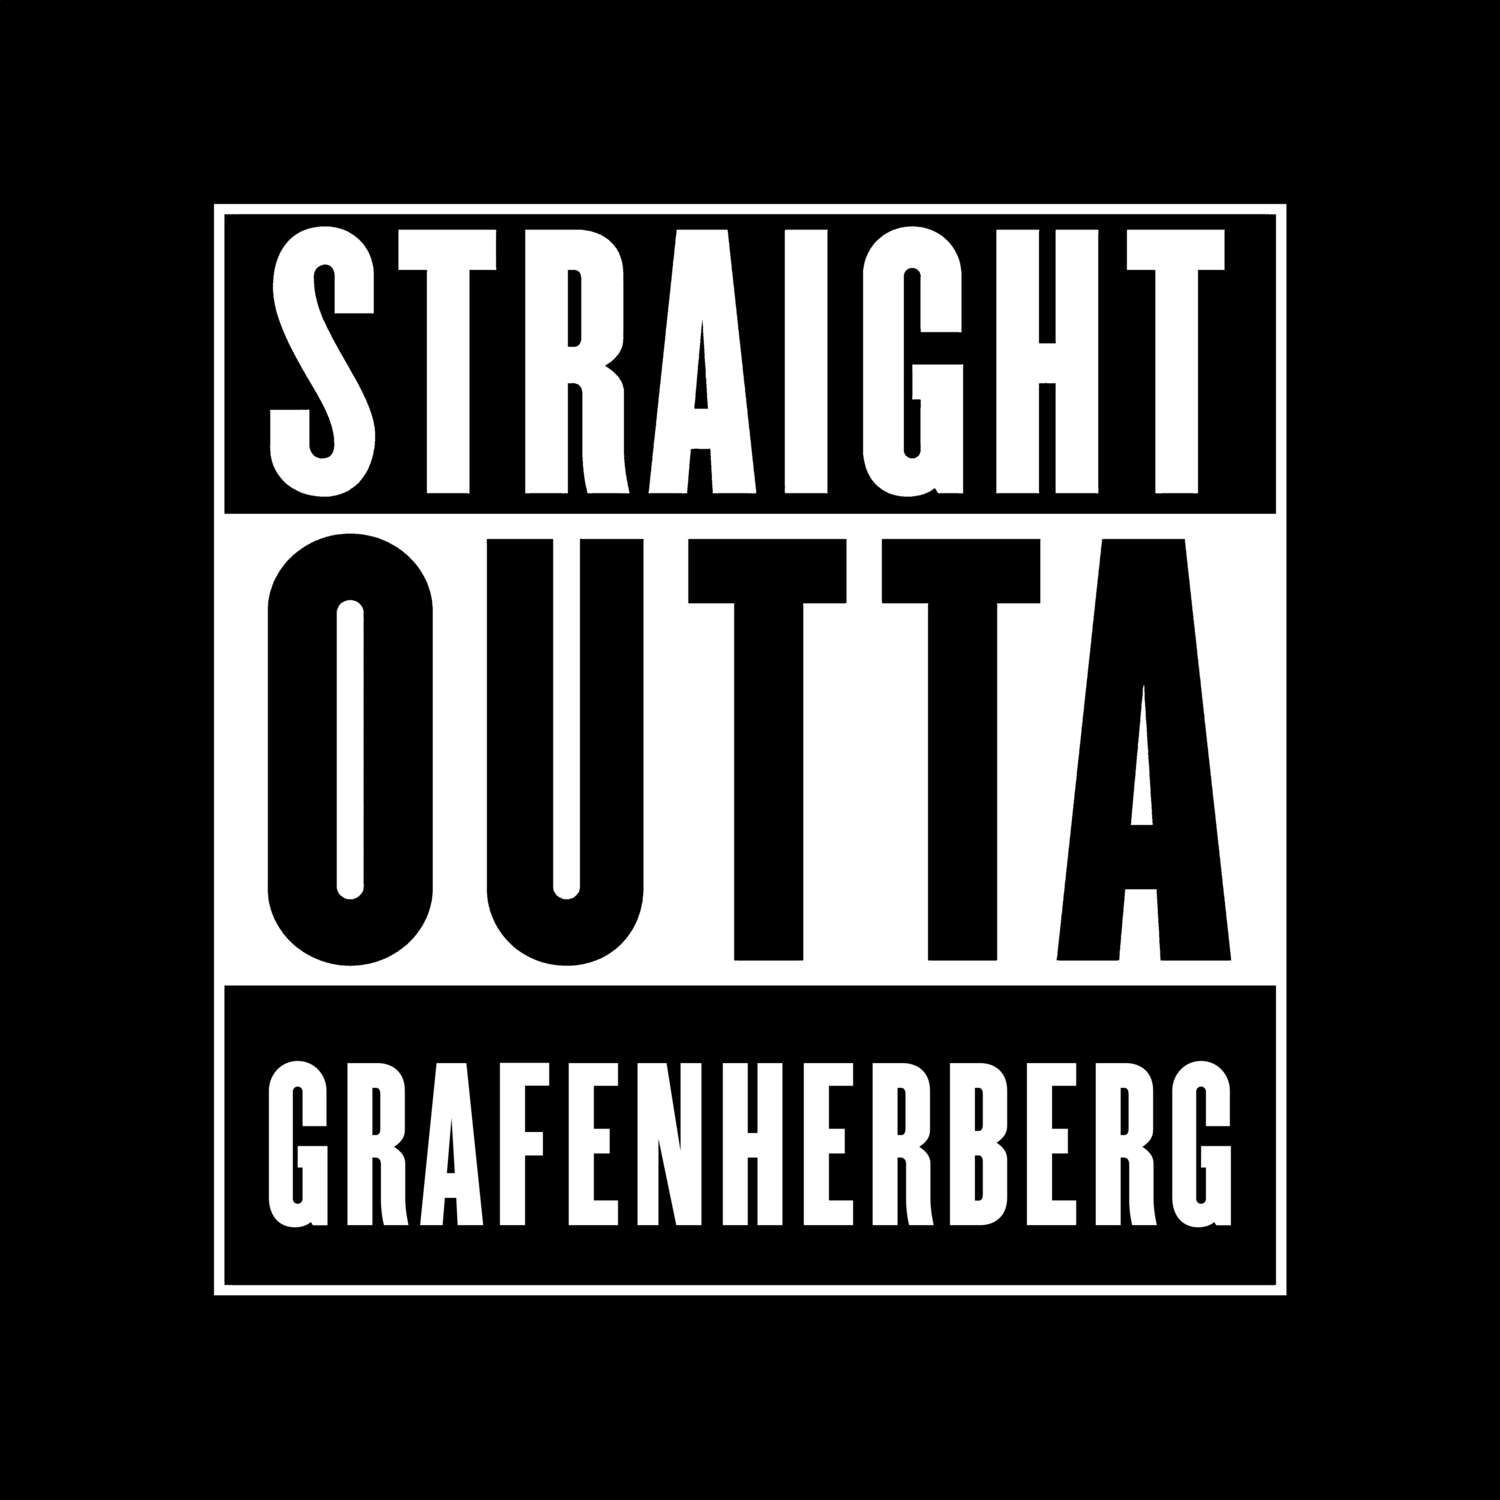 Grafenherberg T-Shirt »Straight Outta«